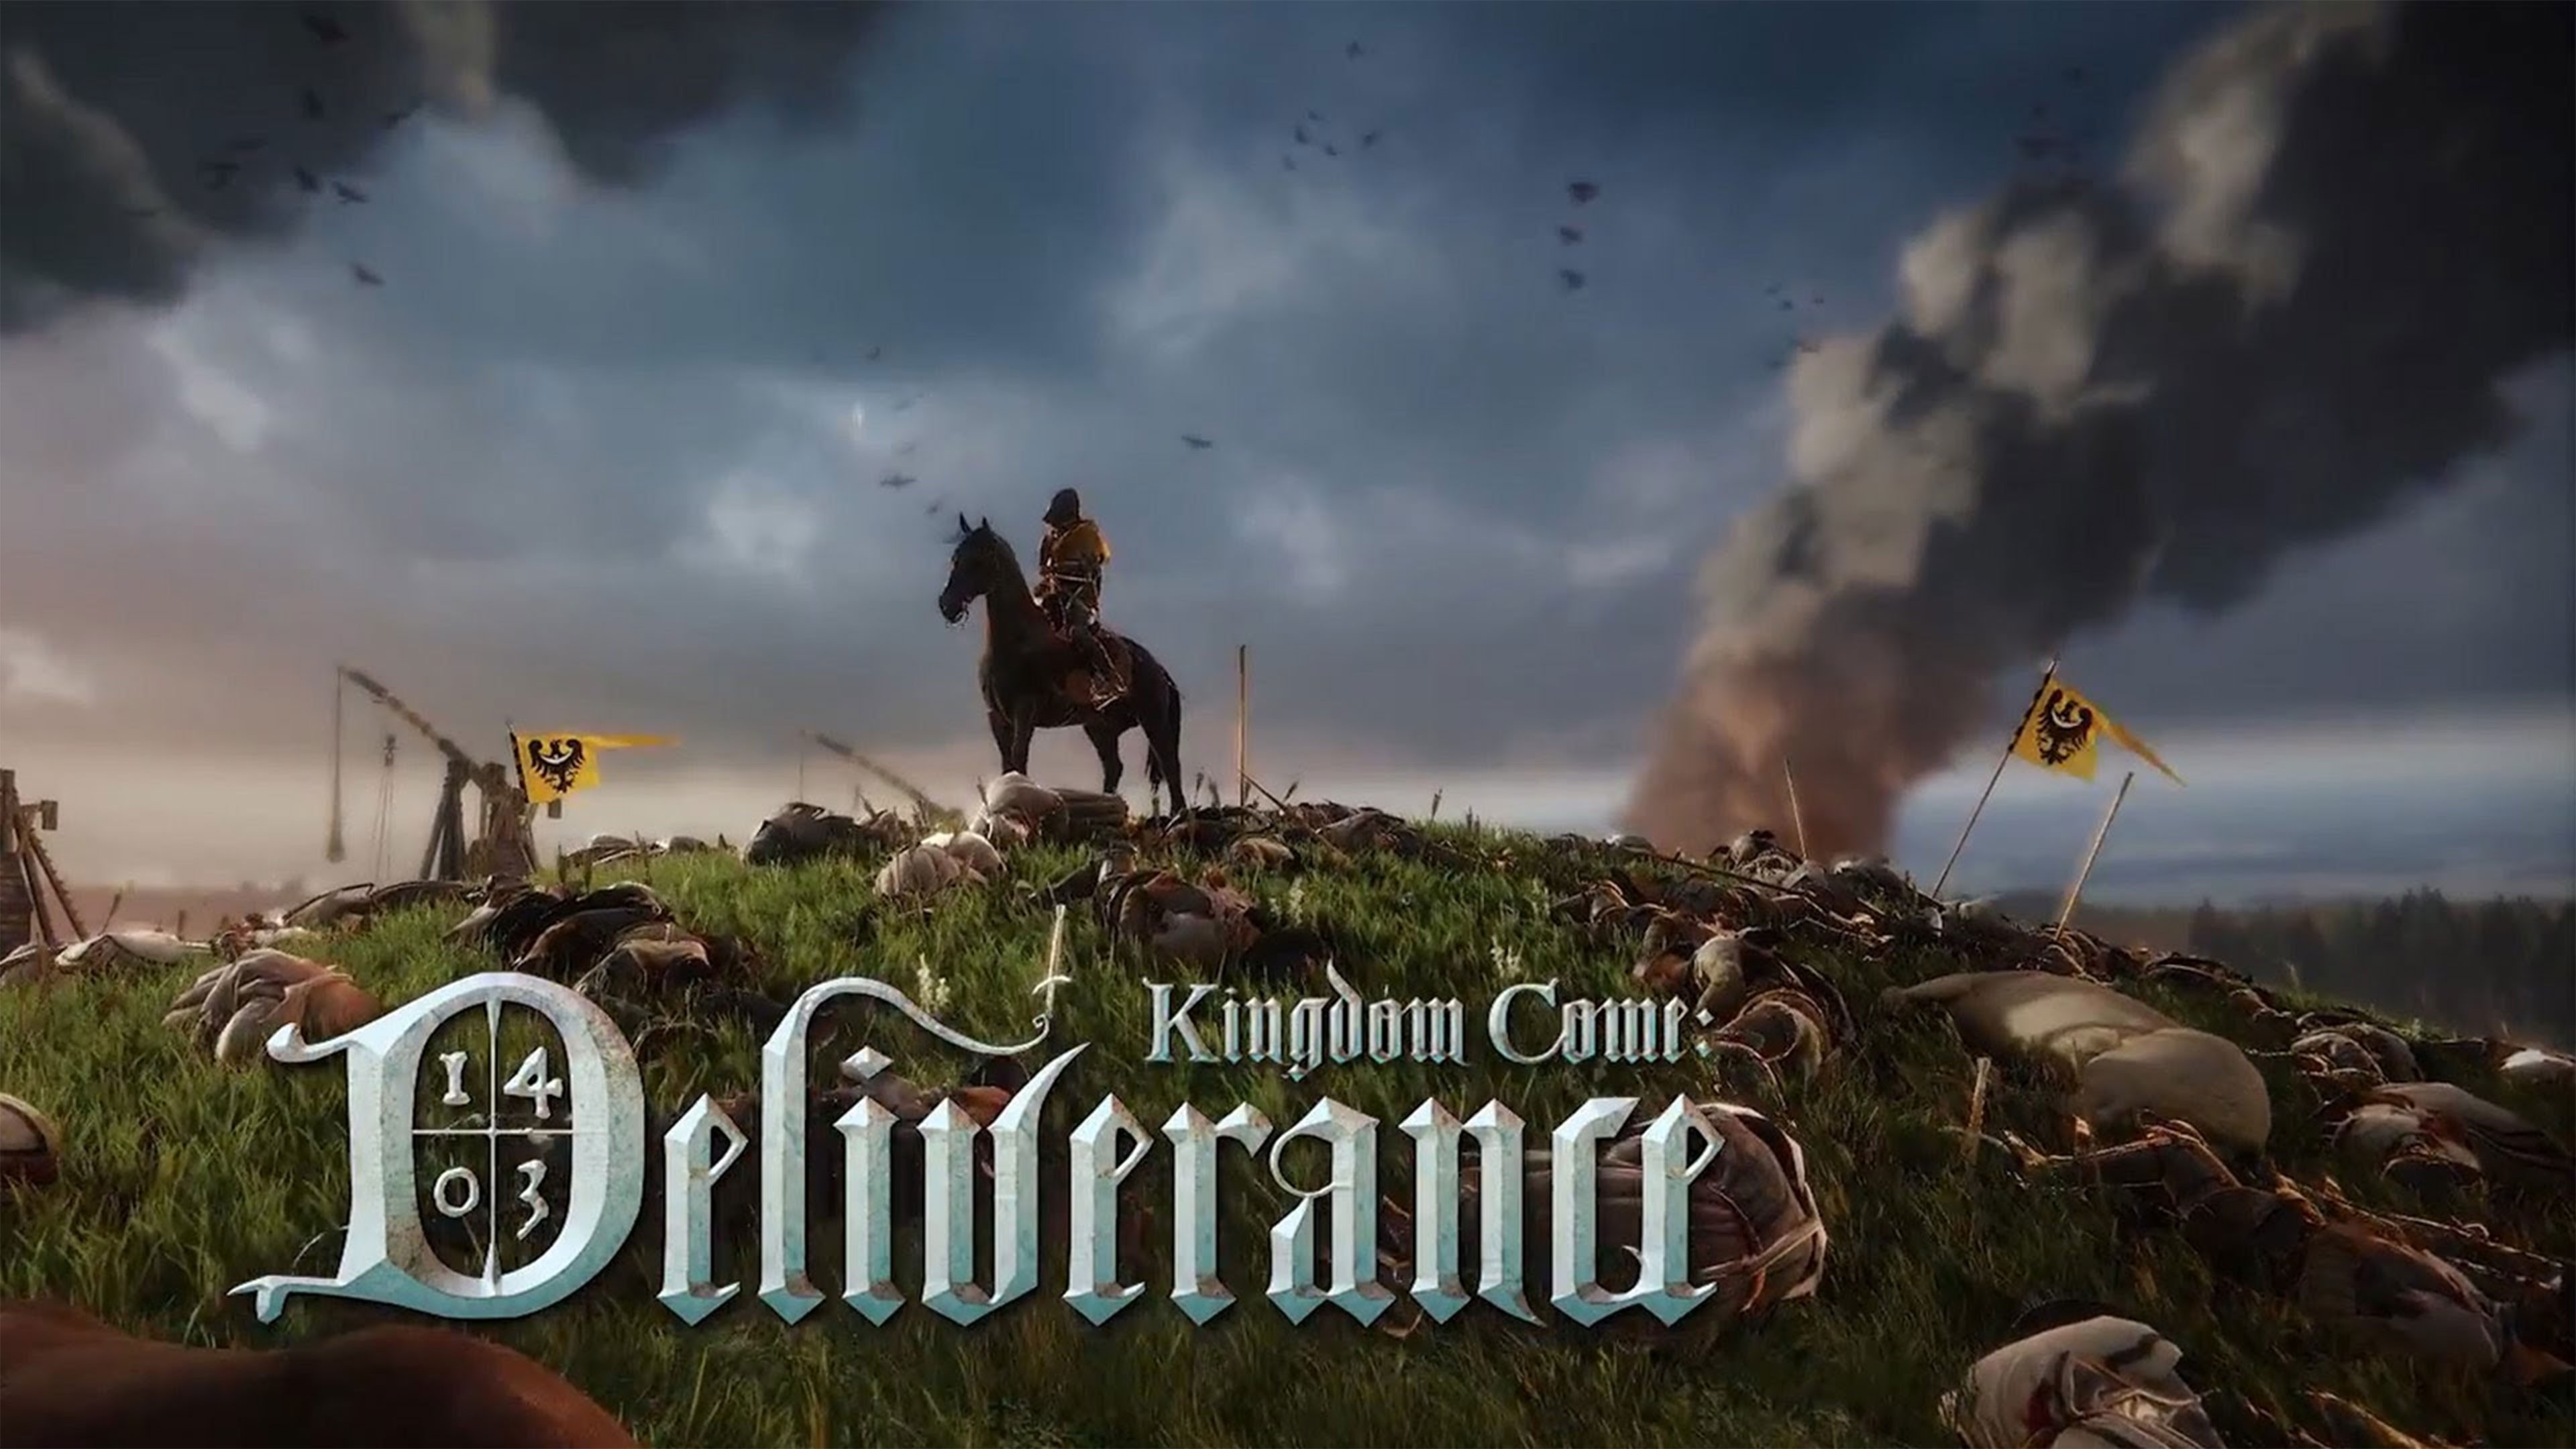 Кингдом кам замок. Игра Kingdom come: deliverance Постер. Kind of come deliverance. Kingdom come deliverance геймплей.